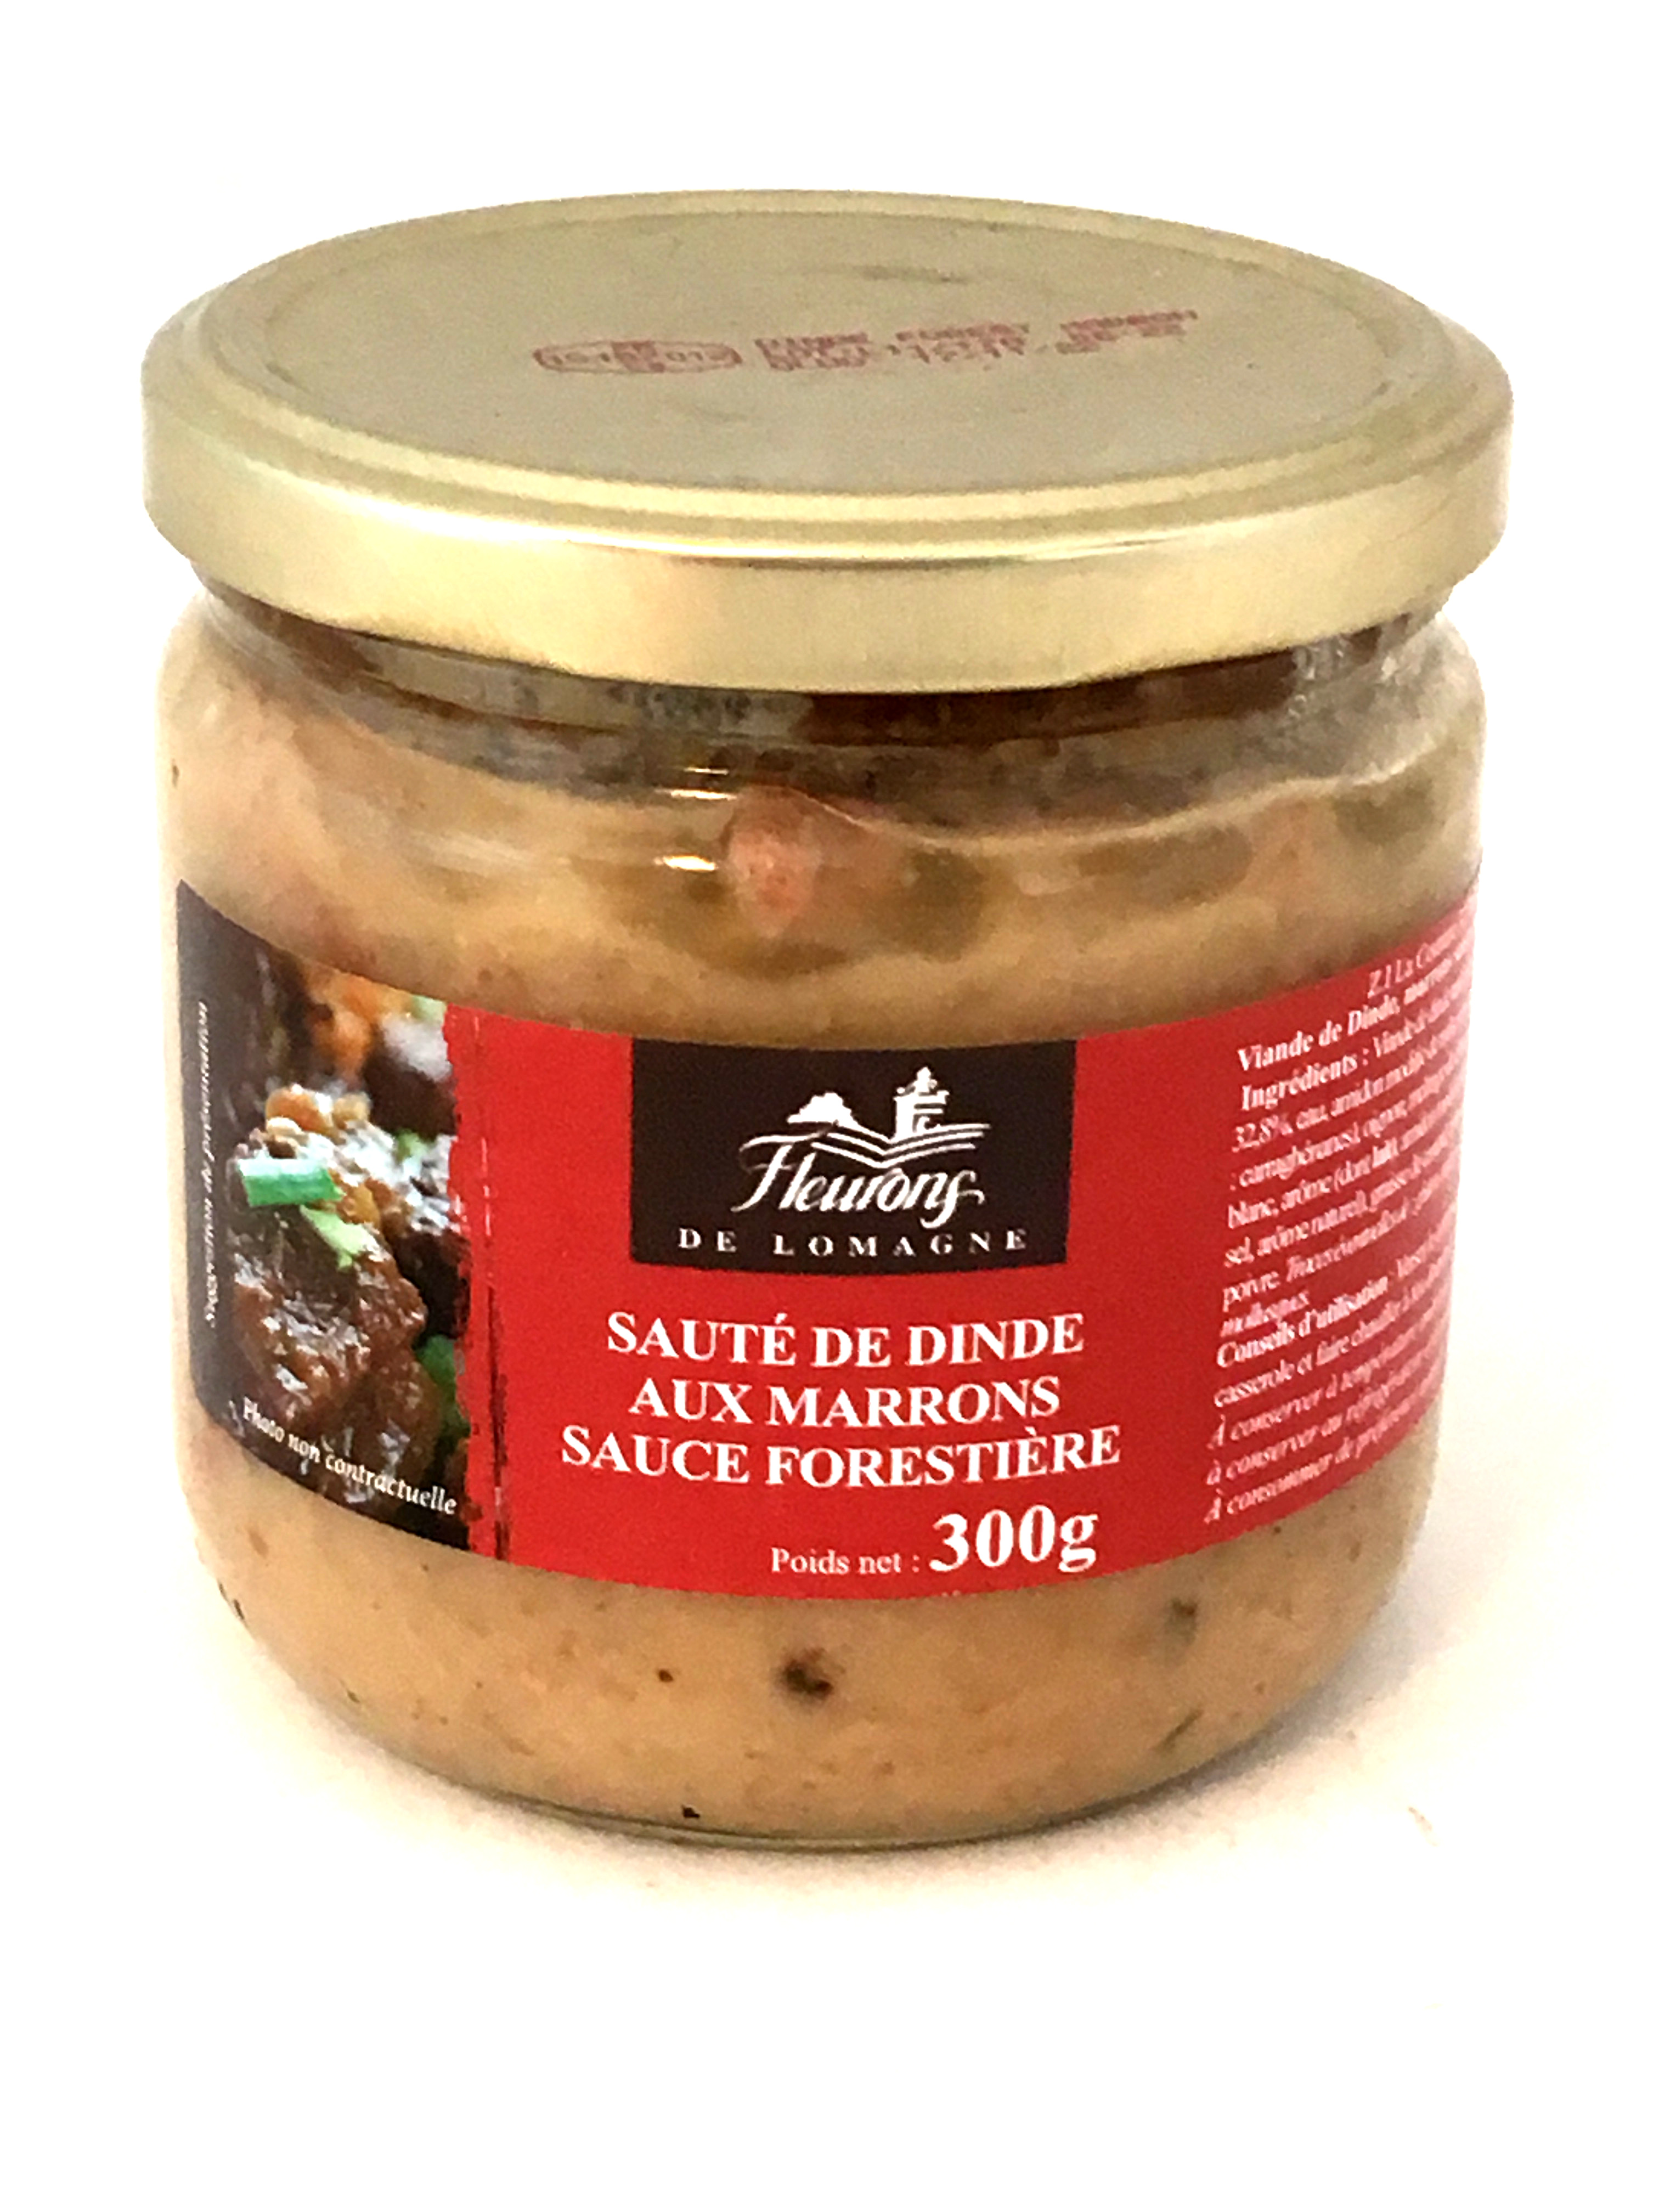 Sauté de dinde aux marrons sauce forestière 300g (bocal)